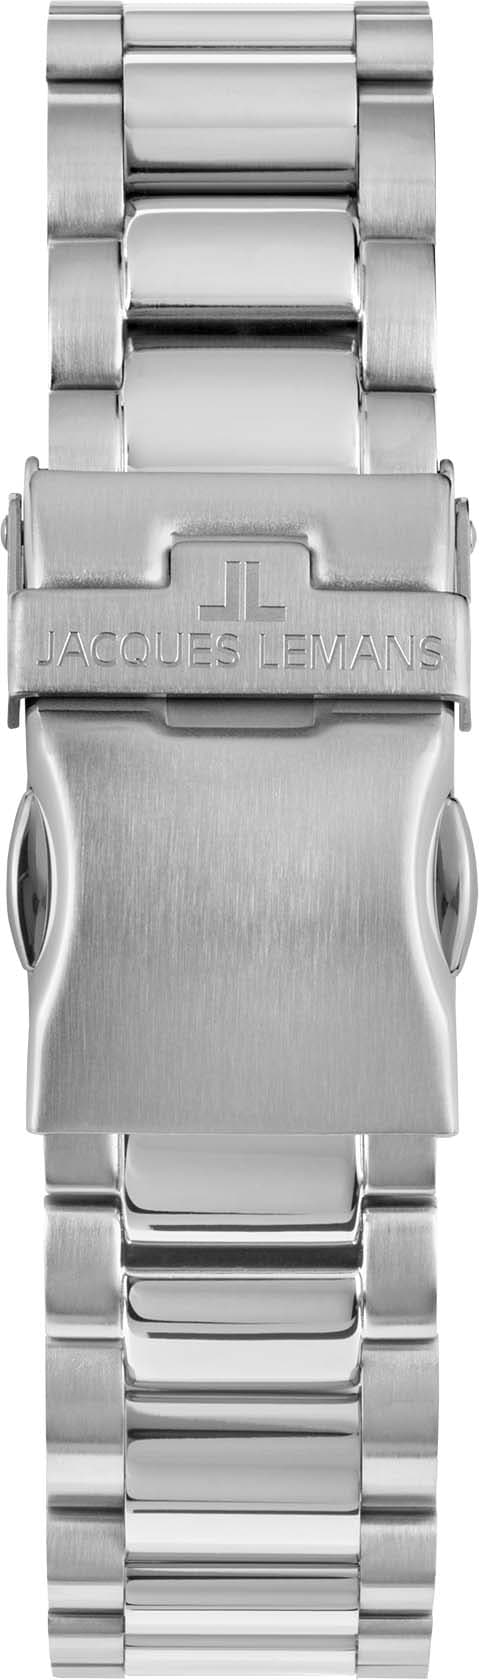 Jacques Lemans Chronograph »Liverpool, 1-2140F«, Quarzuhr, Armbanduhr, Herrenuhr, Datum, Stoppfunktion